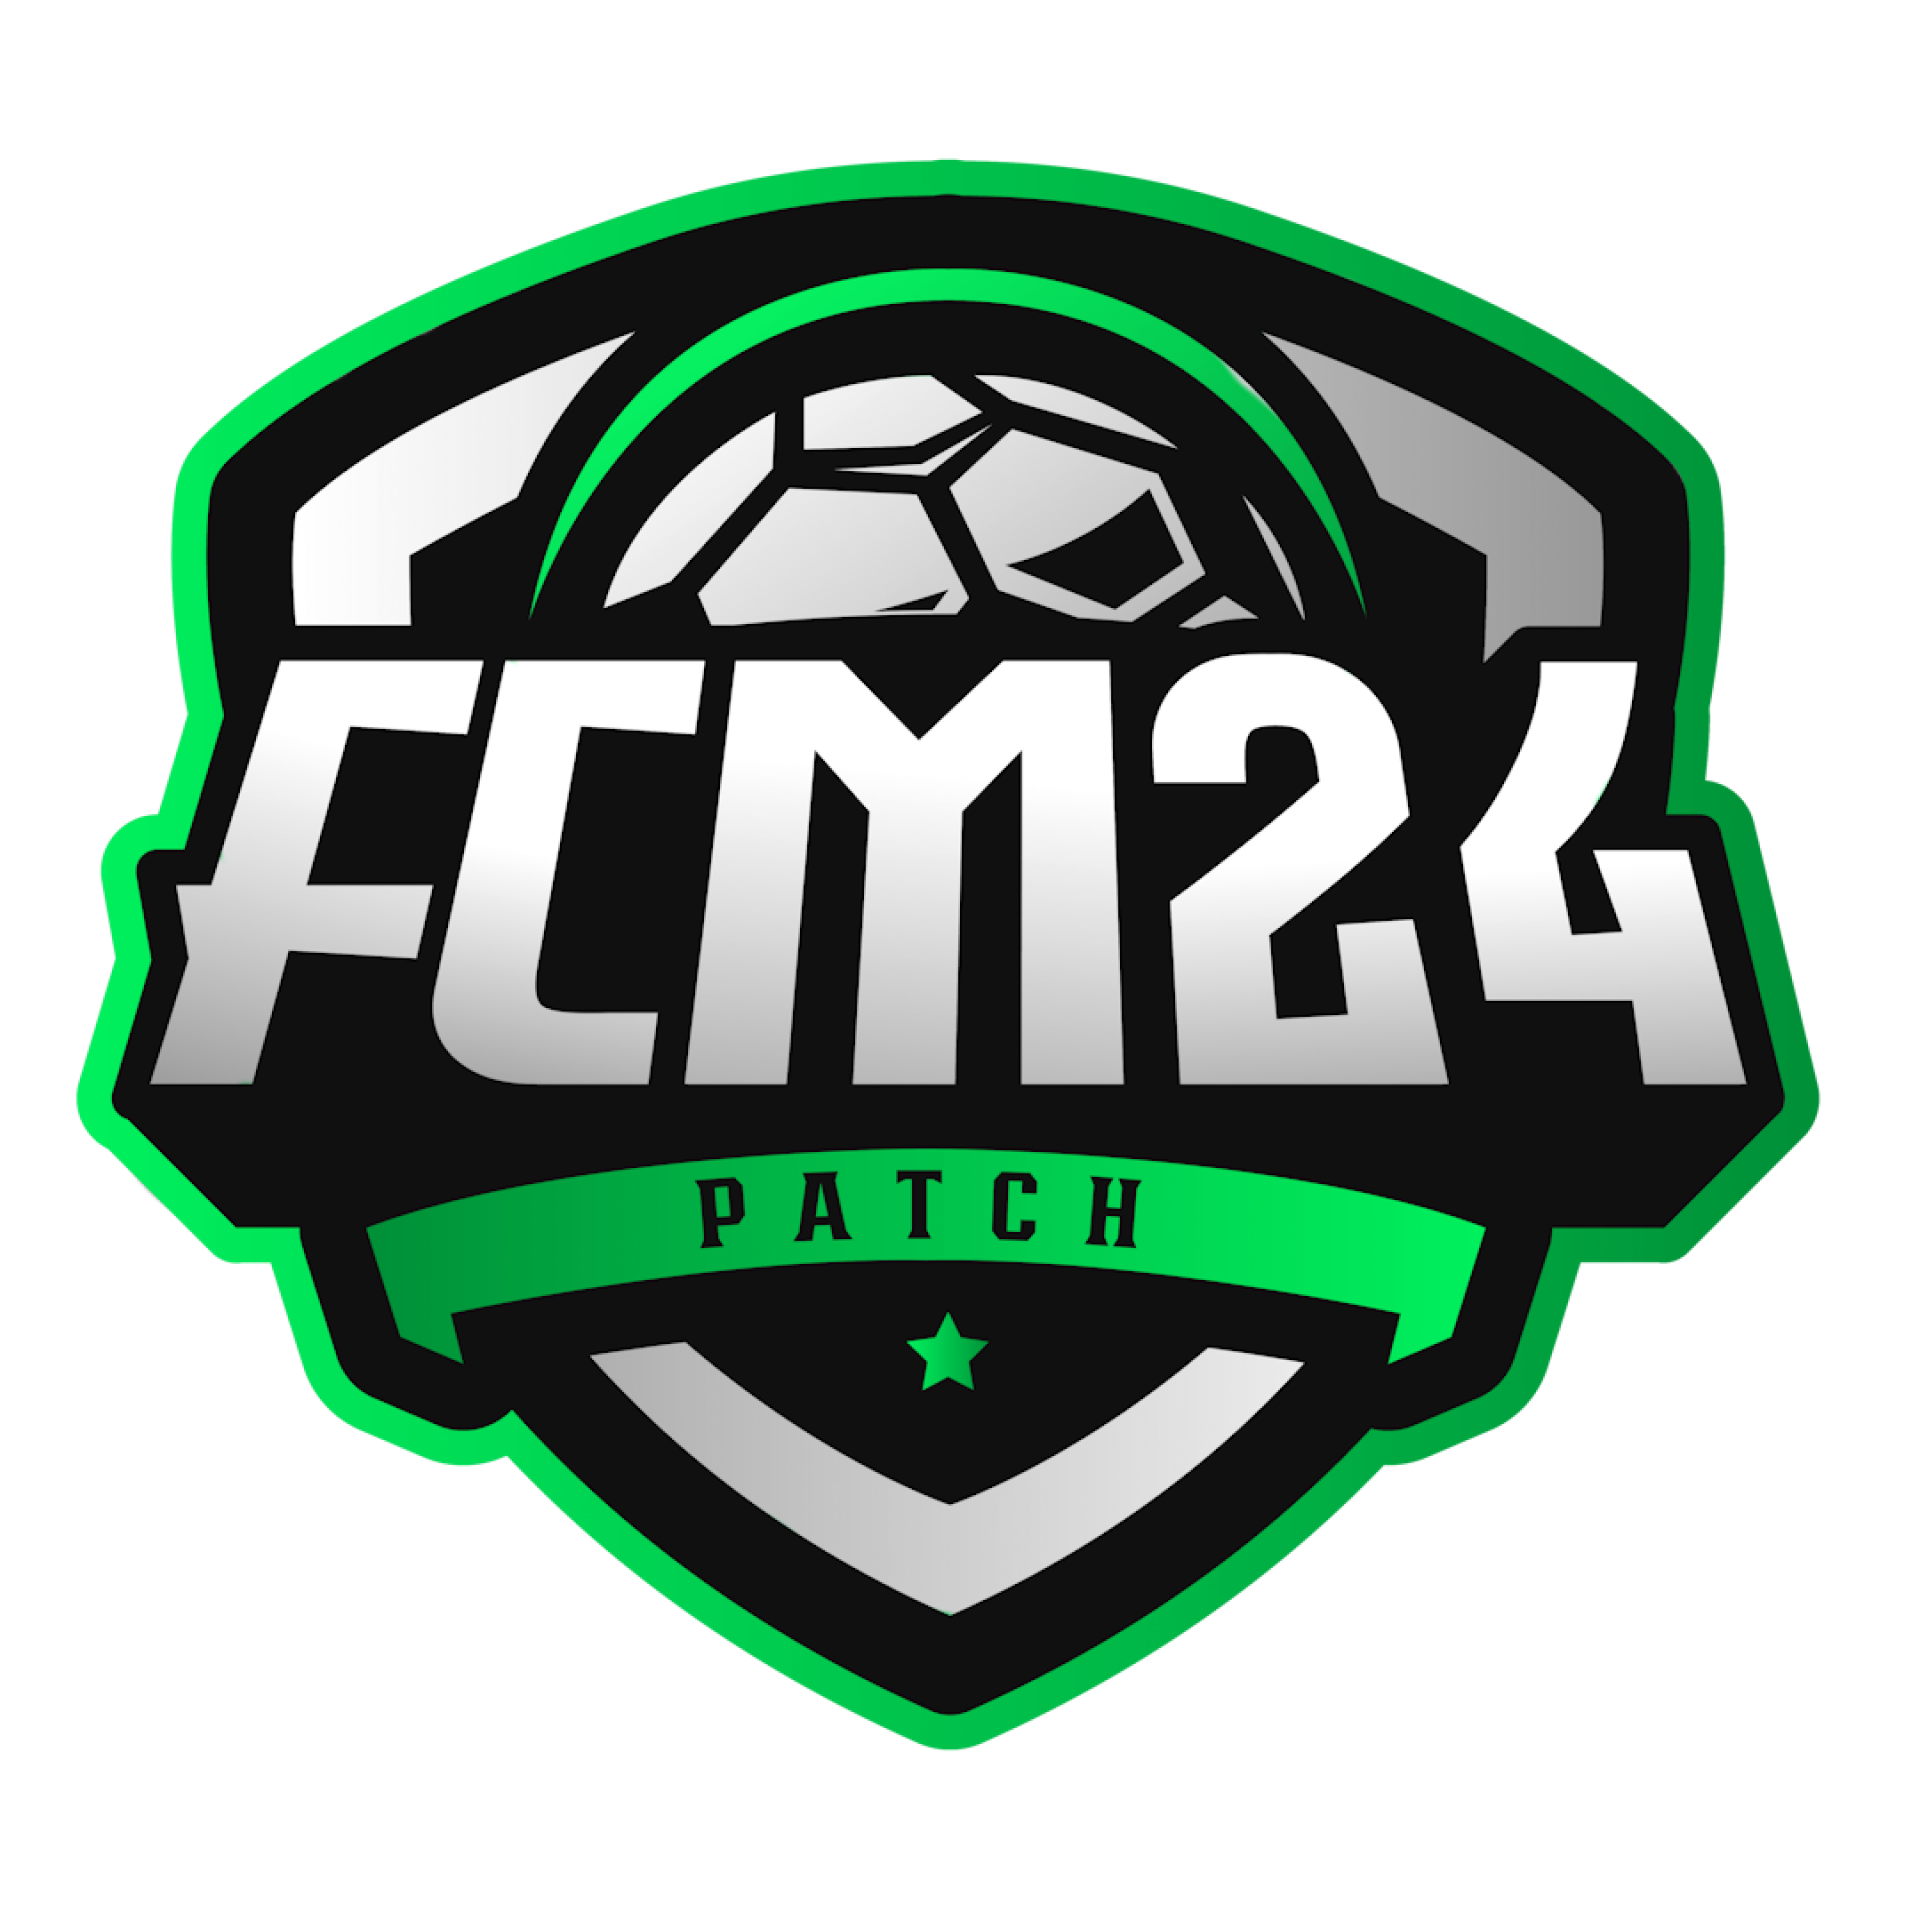 FCM 24 - Patch para EAFC 24 PC - Suporte e atualizações por 12 meses